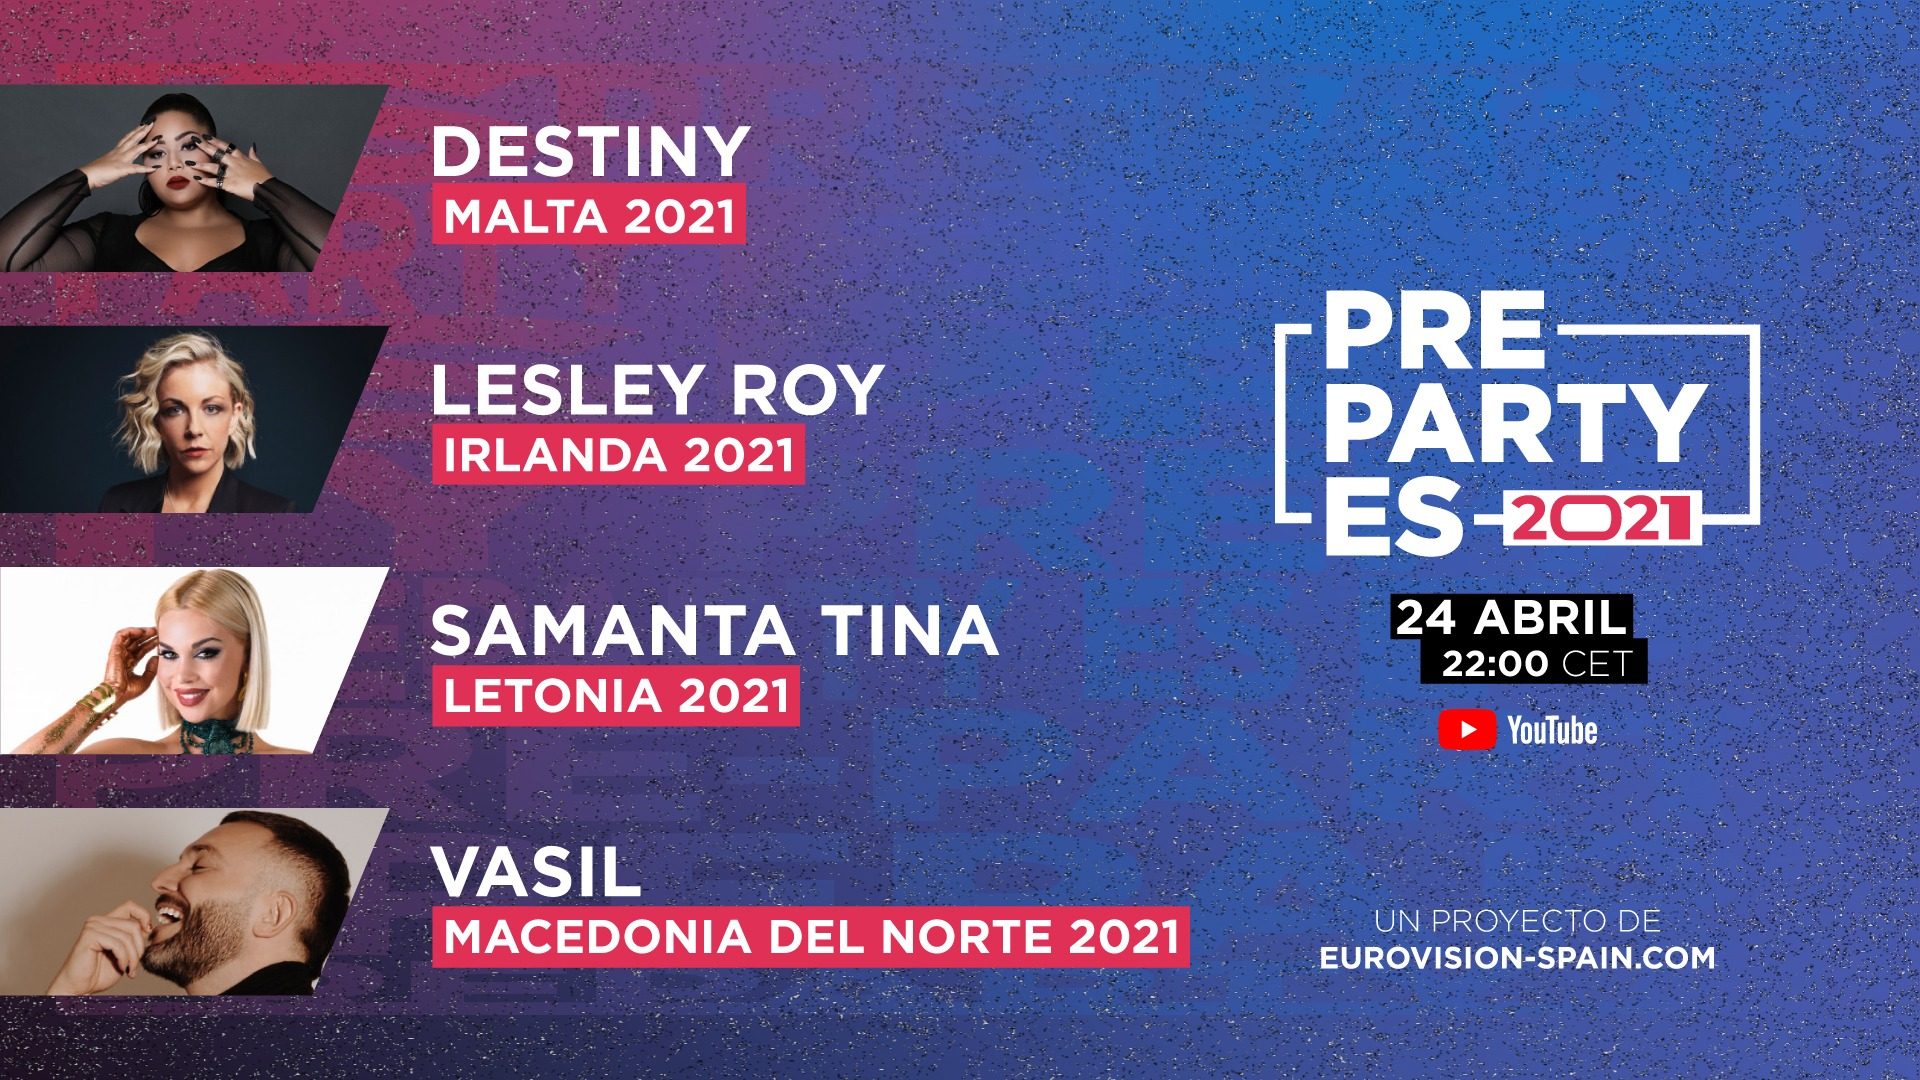 Destiny, Lesley Roy, Samanta Tina y Vasil actuarán en la PrePartyES 2021, que alcanza ya los 12 países participantes